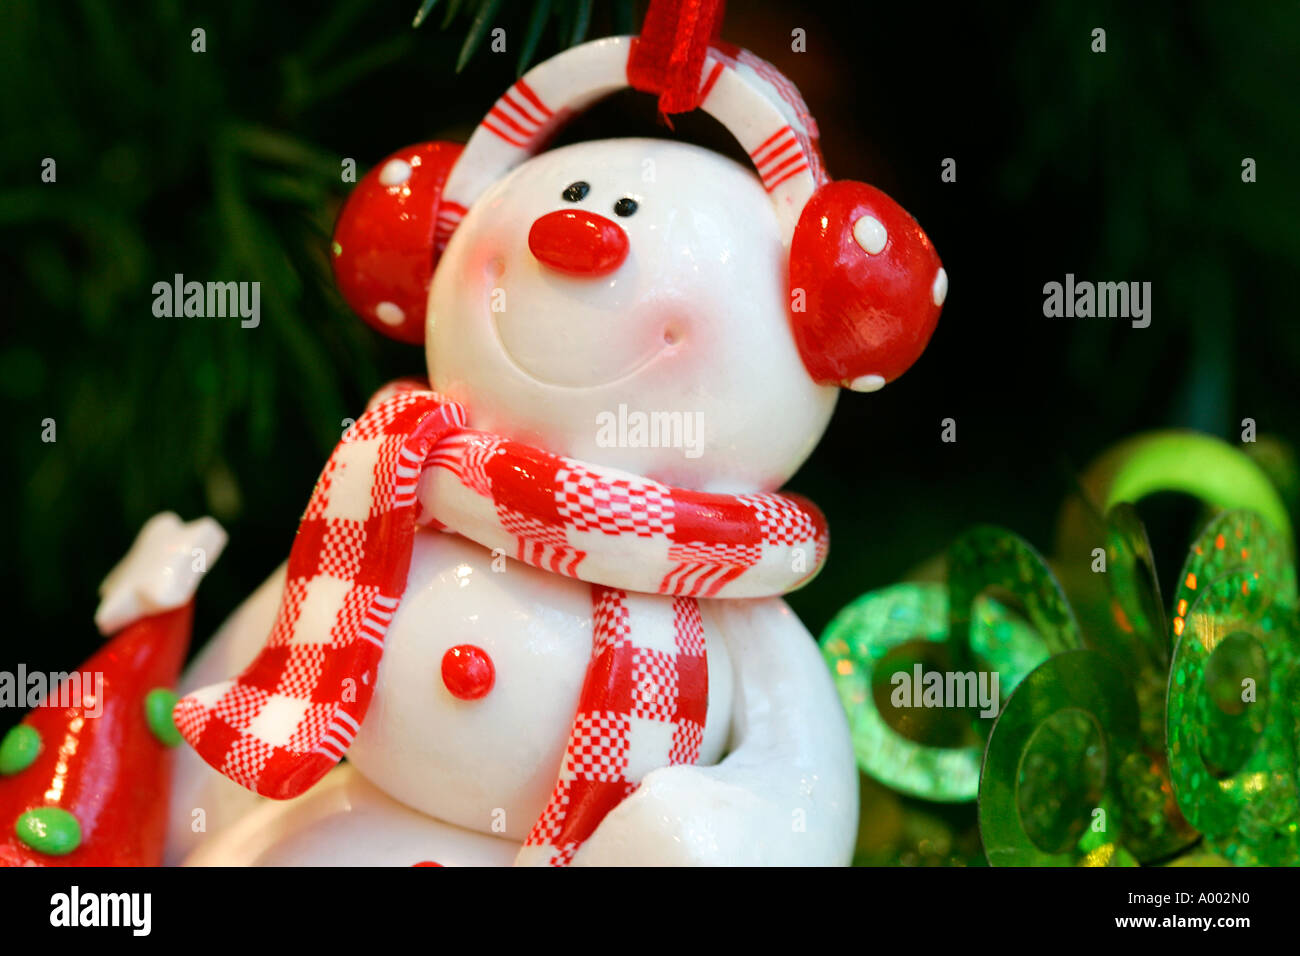 Schneemann Weihnachten X-Mas Dekoration Spielzeug dekorieren Party Feier weichen Geschenke Weihnachten Neujahr Christian Vater Weihnachtsbeleuchtung Stockfoto